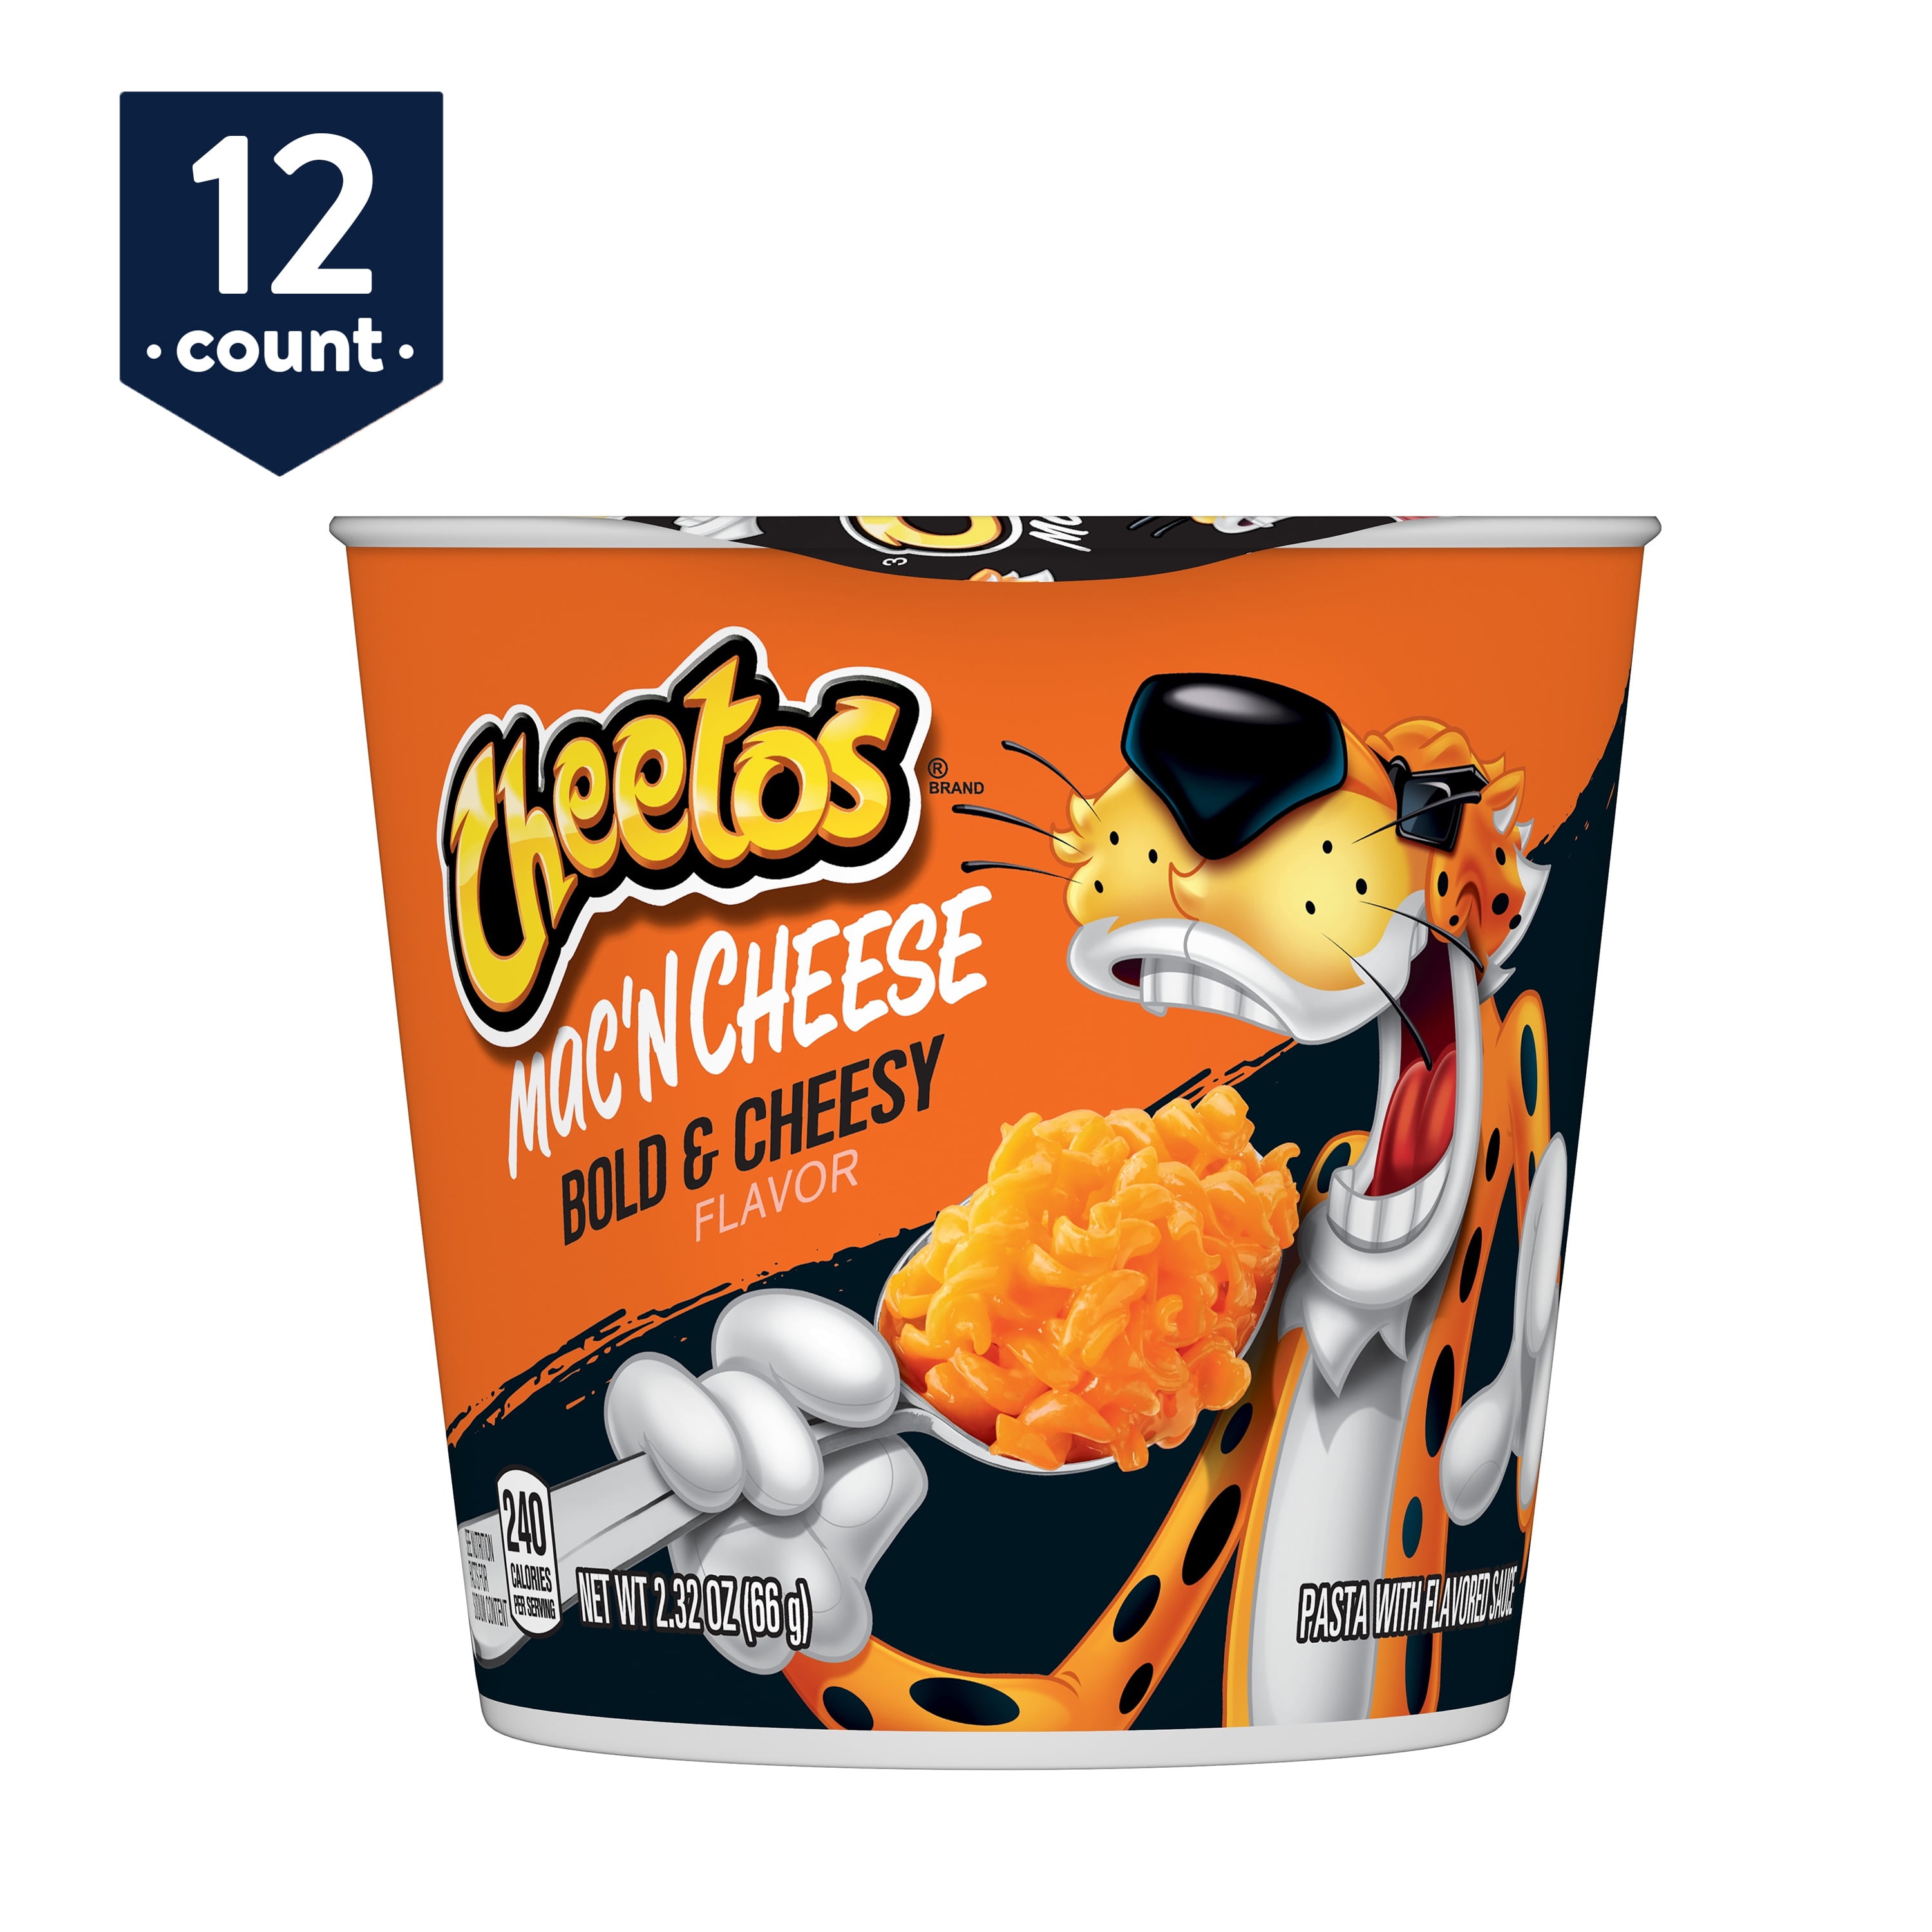 Cheetos Mac 'N Cheese, Bold & Cheesy Flavor, 2.32 oz Cups, 12 Coun...